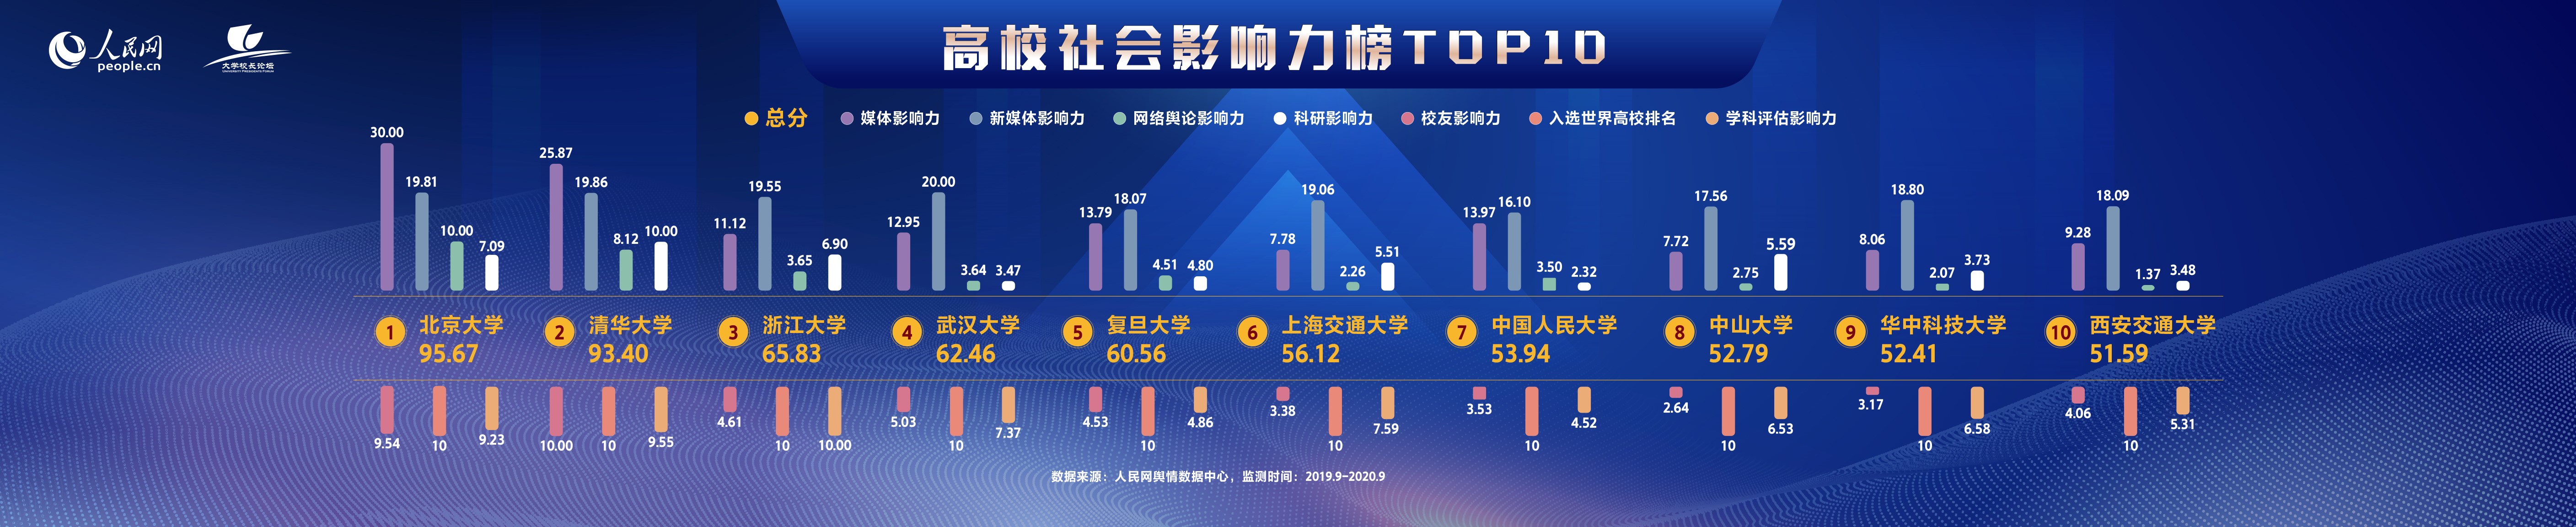 2020年在线教育排名_人民网发布2020年度中国高校社会影响力排行榜